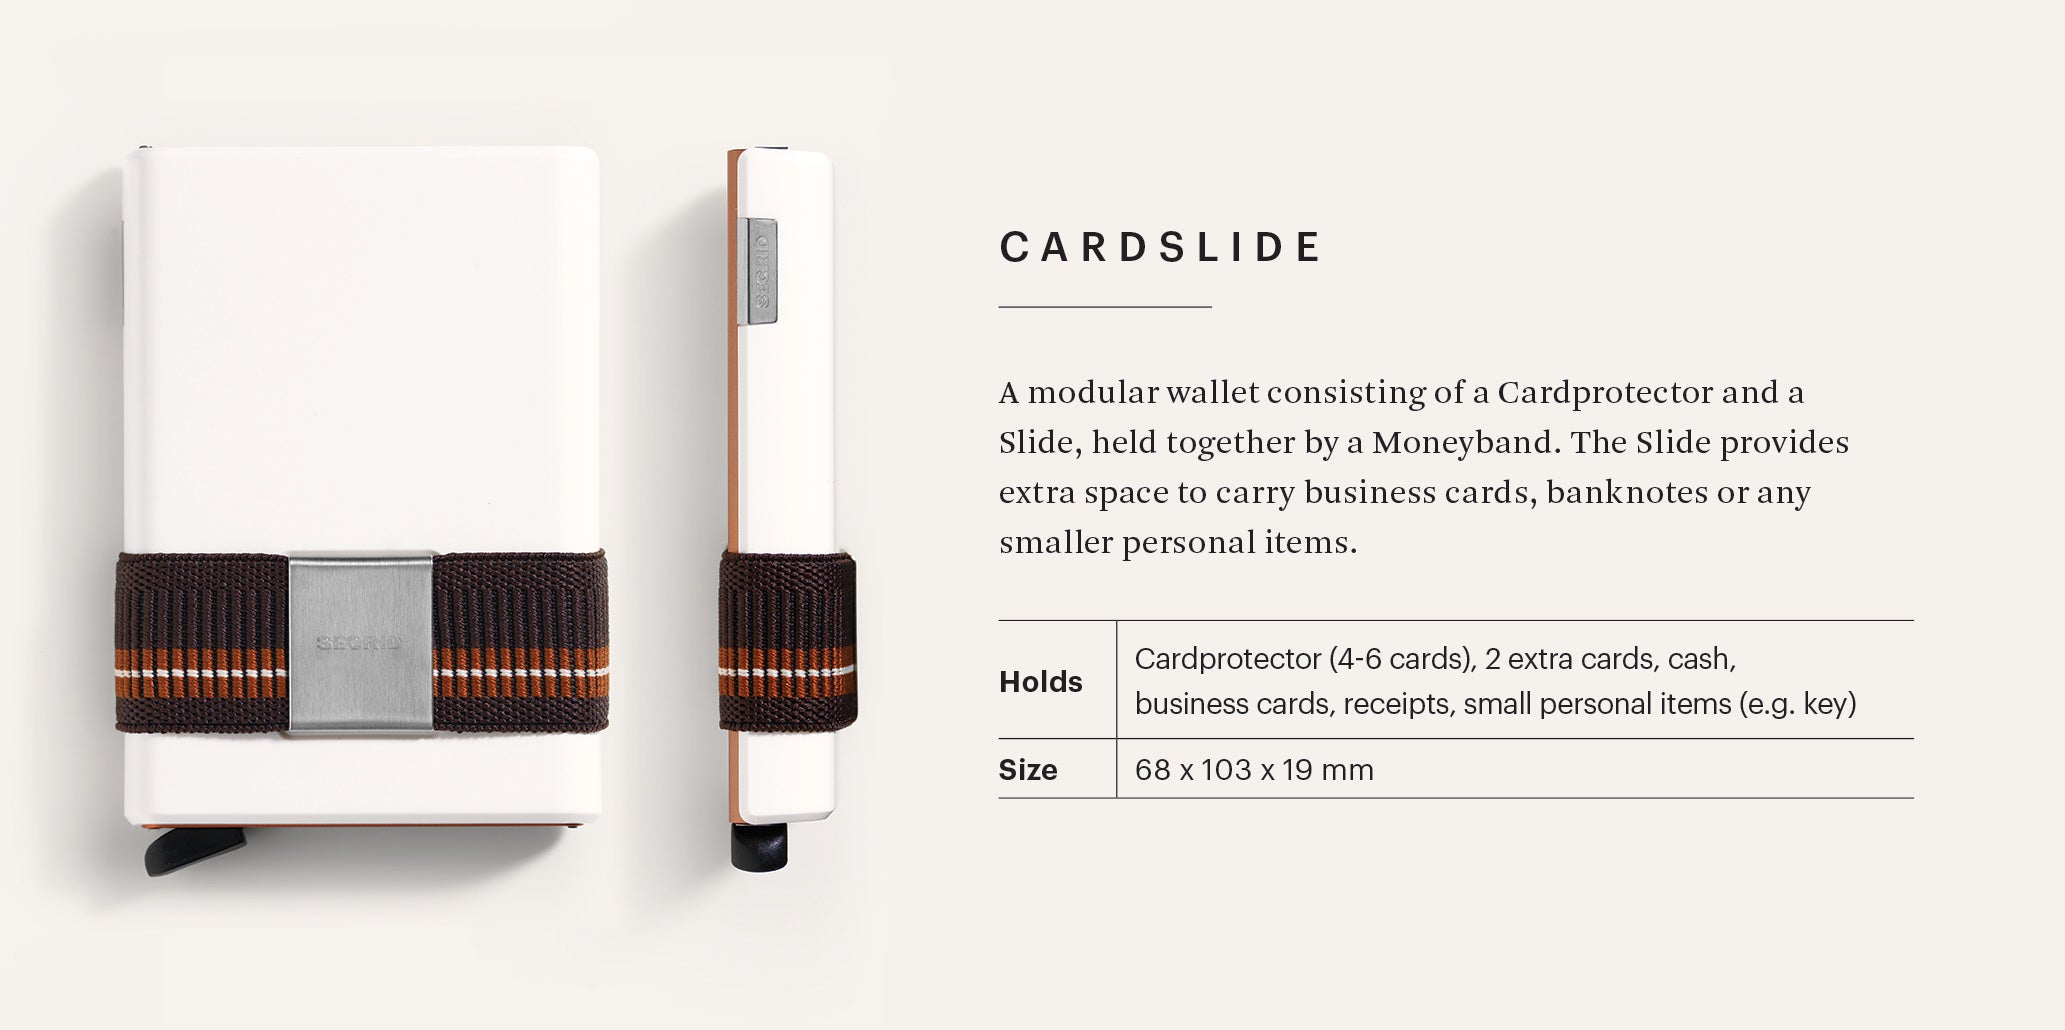 secrid cardslide modular wallet